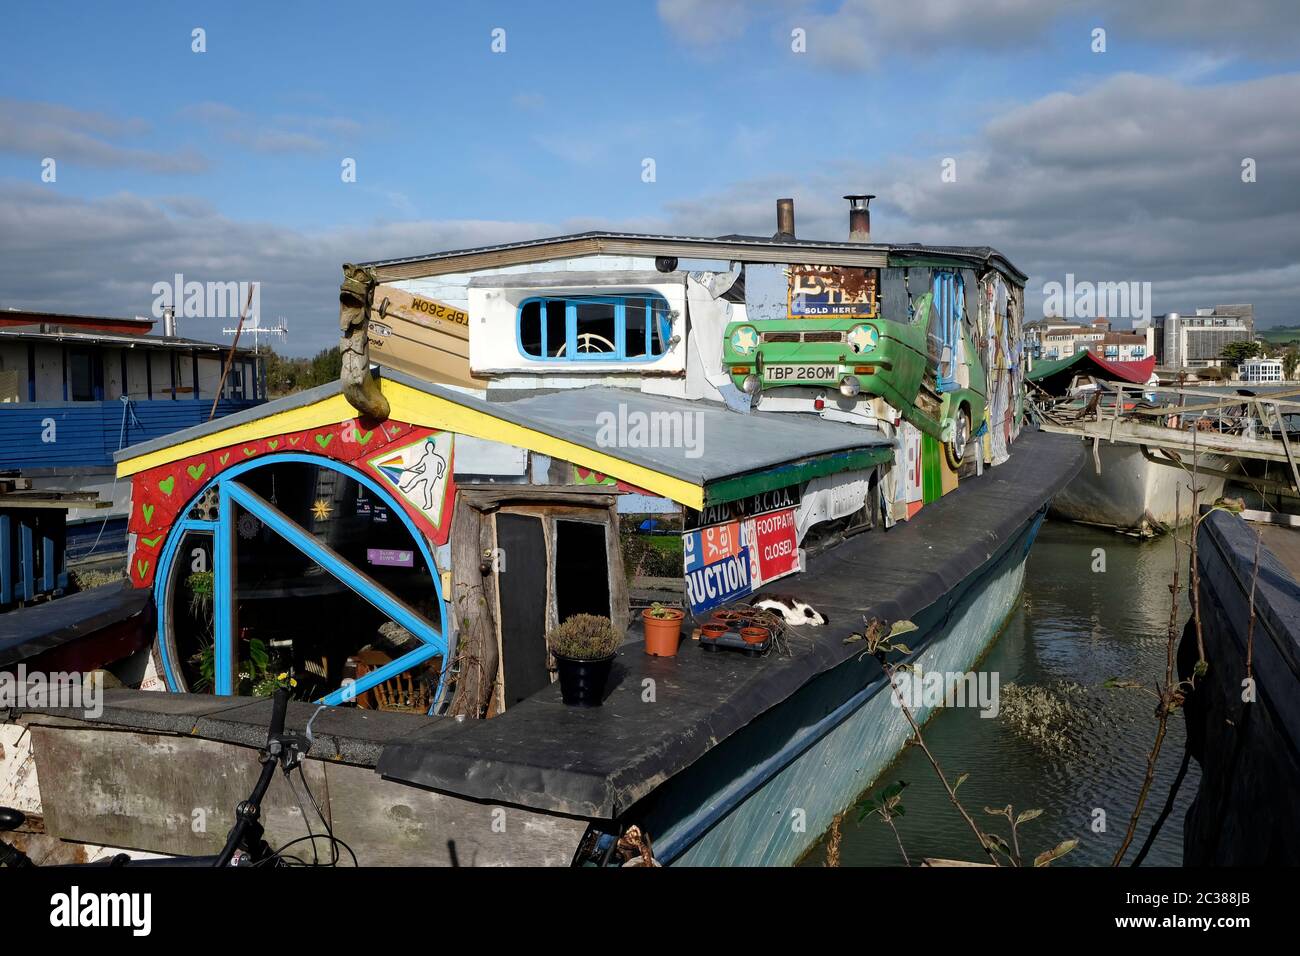 Casas flotantes en Riverbank en el río Adur, Shoreham, Brighton Foto de stock